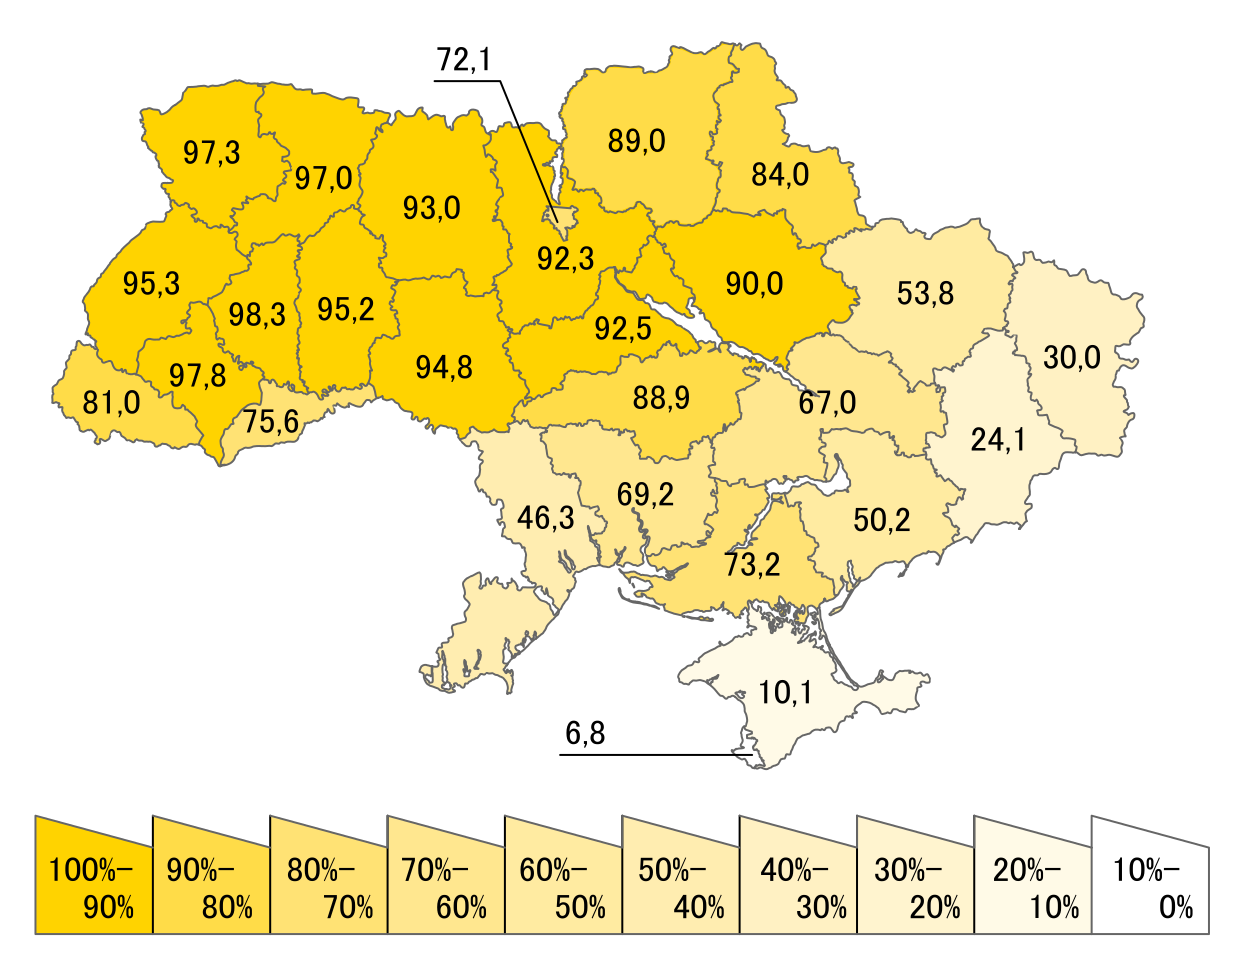 Какой была украина в 1991 году. Референдум 1991 года о независимости Украины по областям. Карта референдума 1991 года на Украине. Украина референдум о независимости 1991 карта. Карта голосования на Украине в 1991 году.